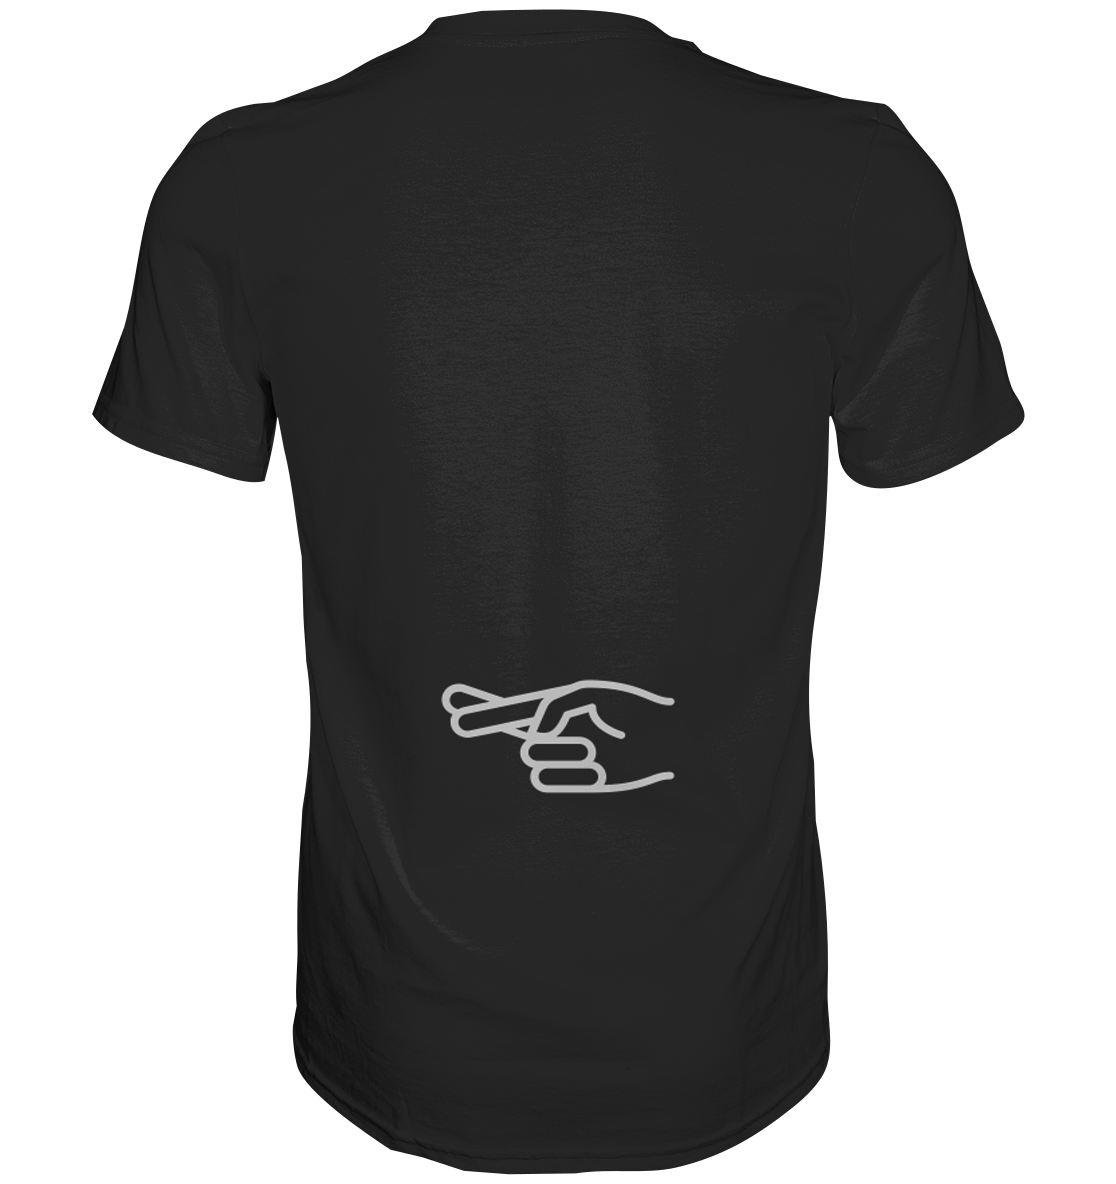 Herren-T-Shirt Rundhals mit beidseitigem Aufdruck "Natürlich liebe ich sie mehr als mein Motorrad", hinten symbol "crossed fingers", schwarz